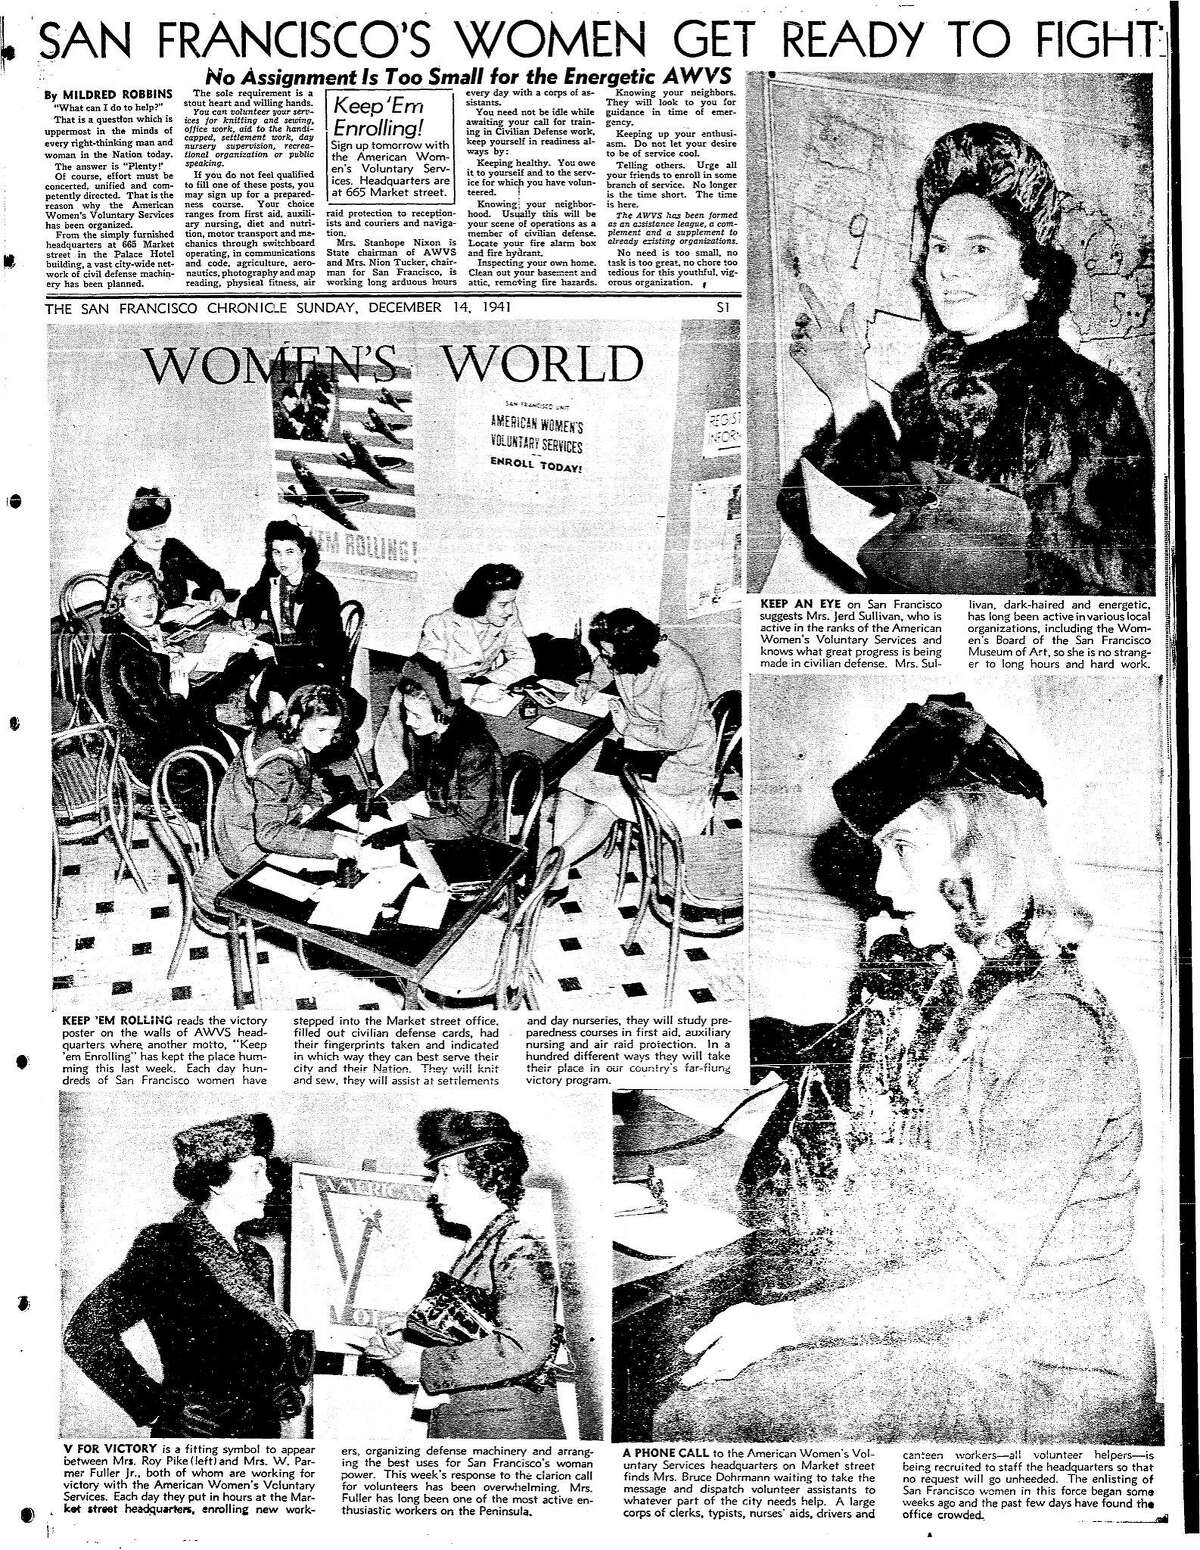 1941年12月14日编年史上的一篇关于各种妇女组织的文章，包括AWVS，美国妇女志愿者服务，在珍珠港袭击后的几天里为战争做准备